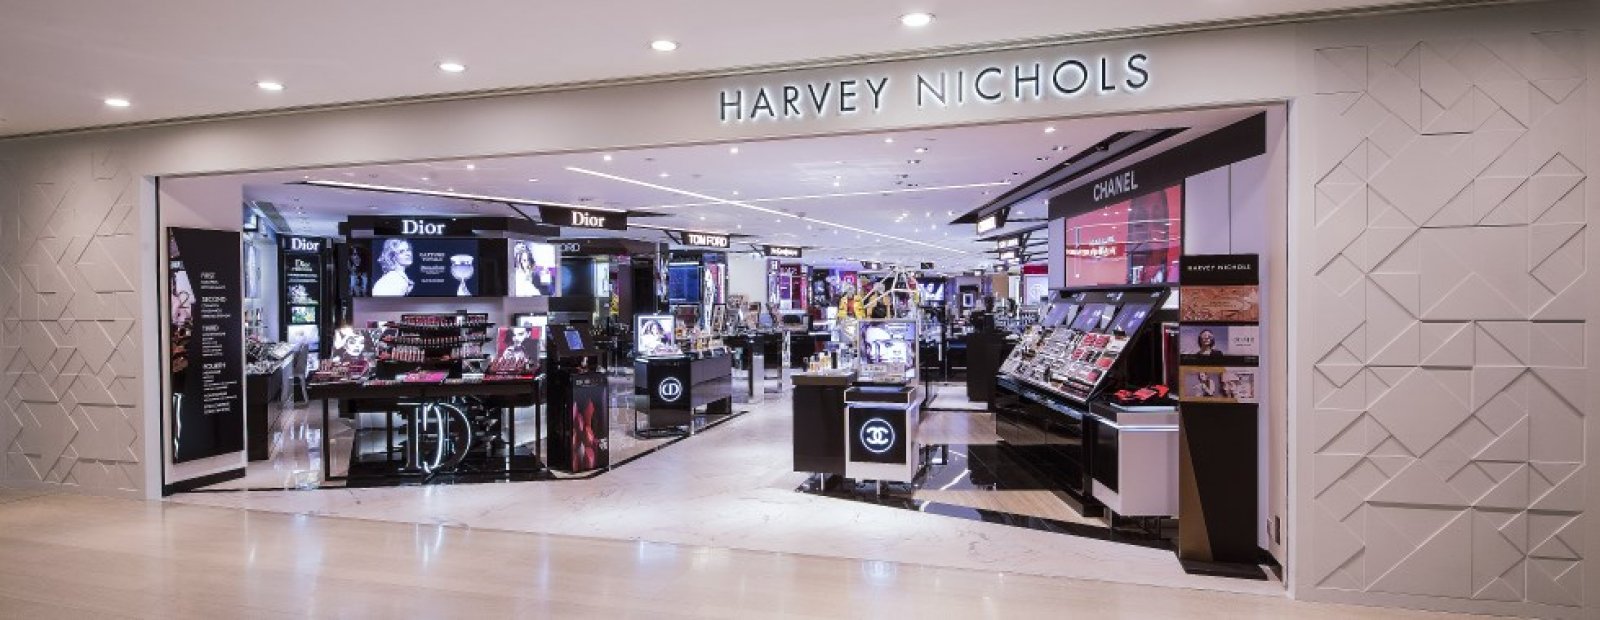 Harvey Nichols Mağazası